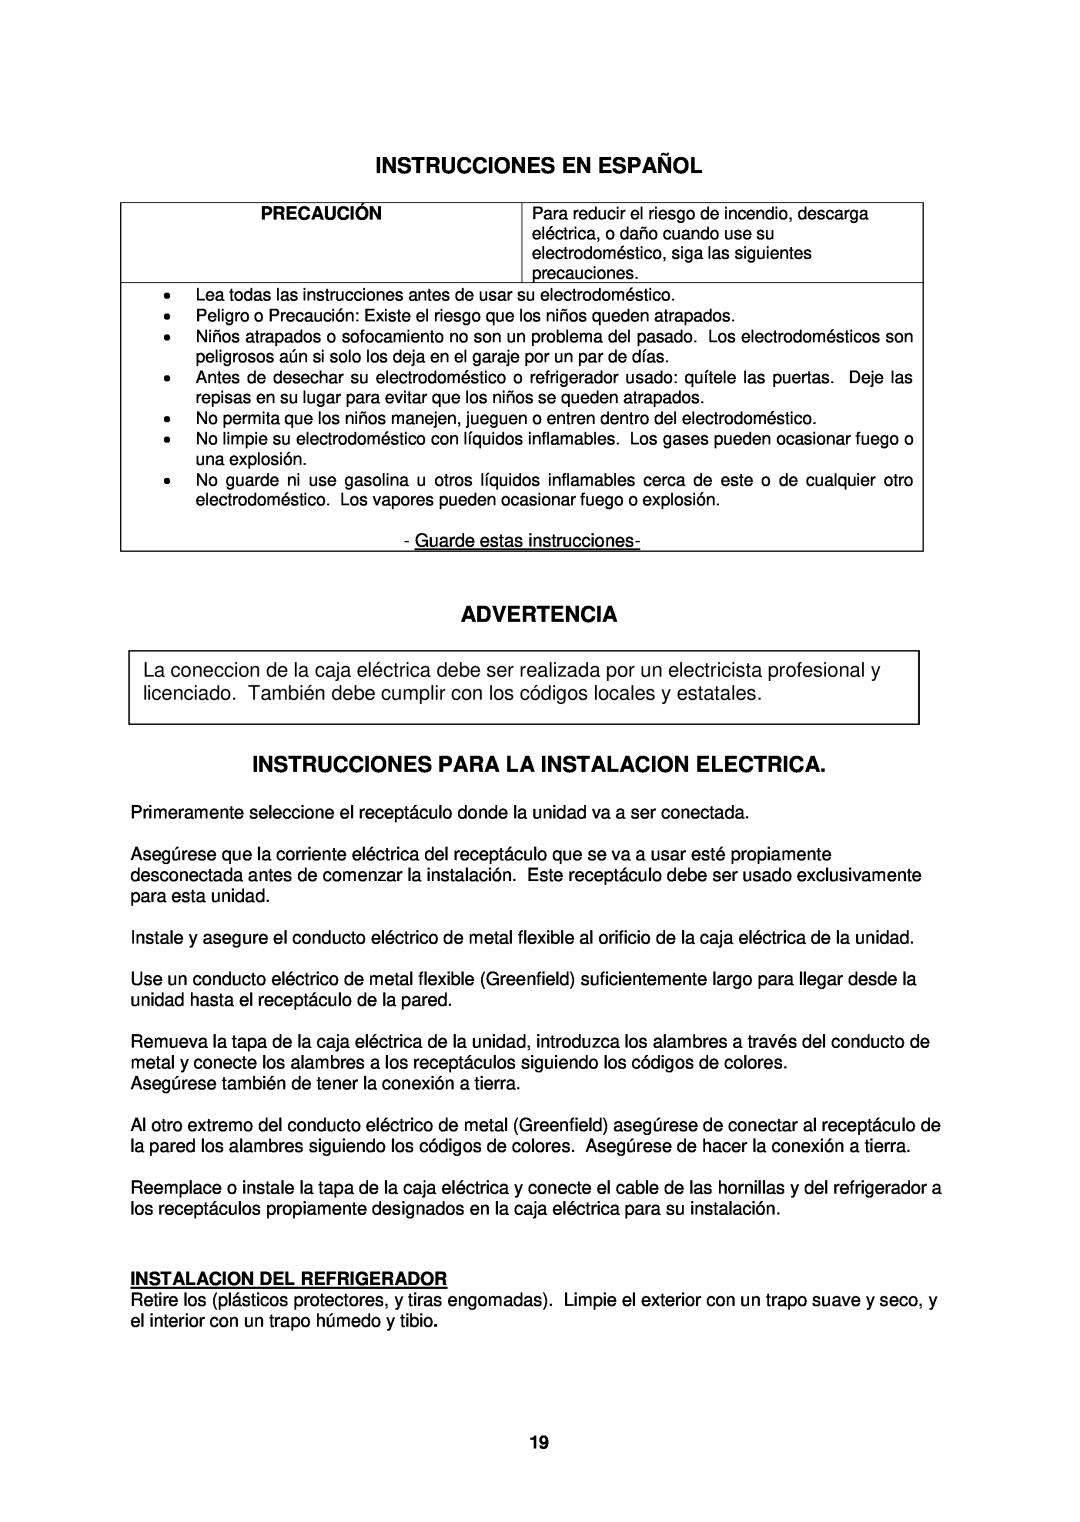 Avanti CK36-1 Instrucciones En Español, Advertencia, Instrucciones Para La Instalacion Electrica, Precaución 